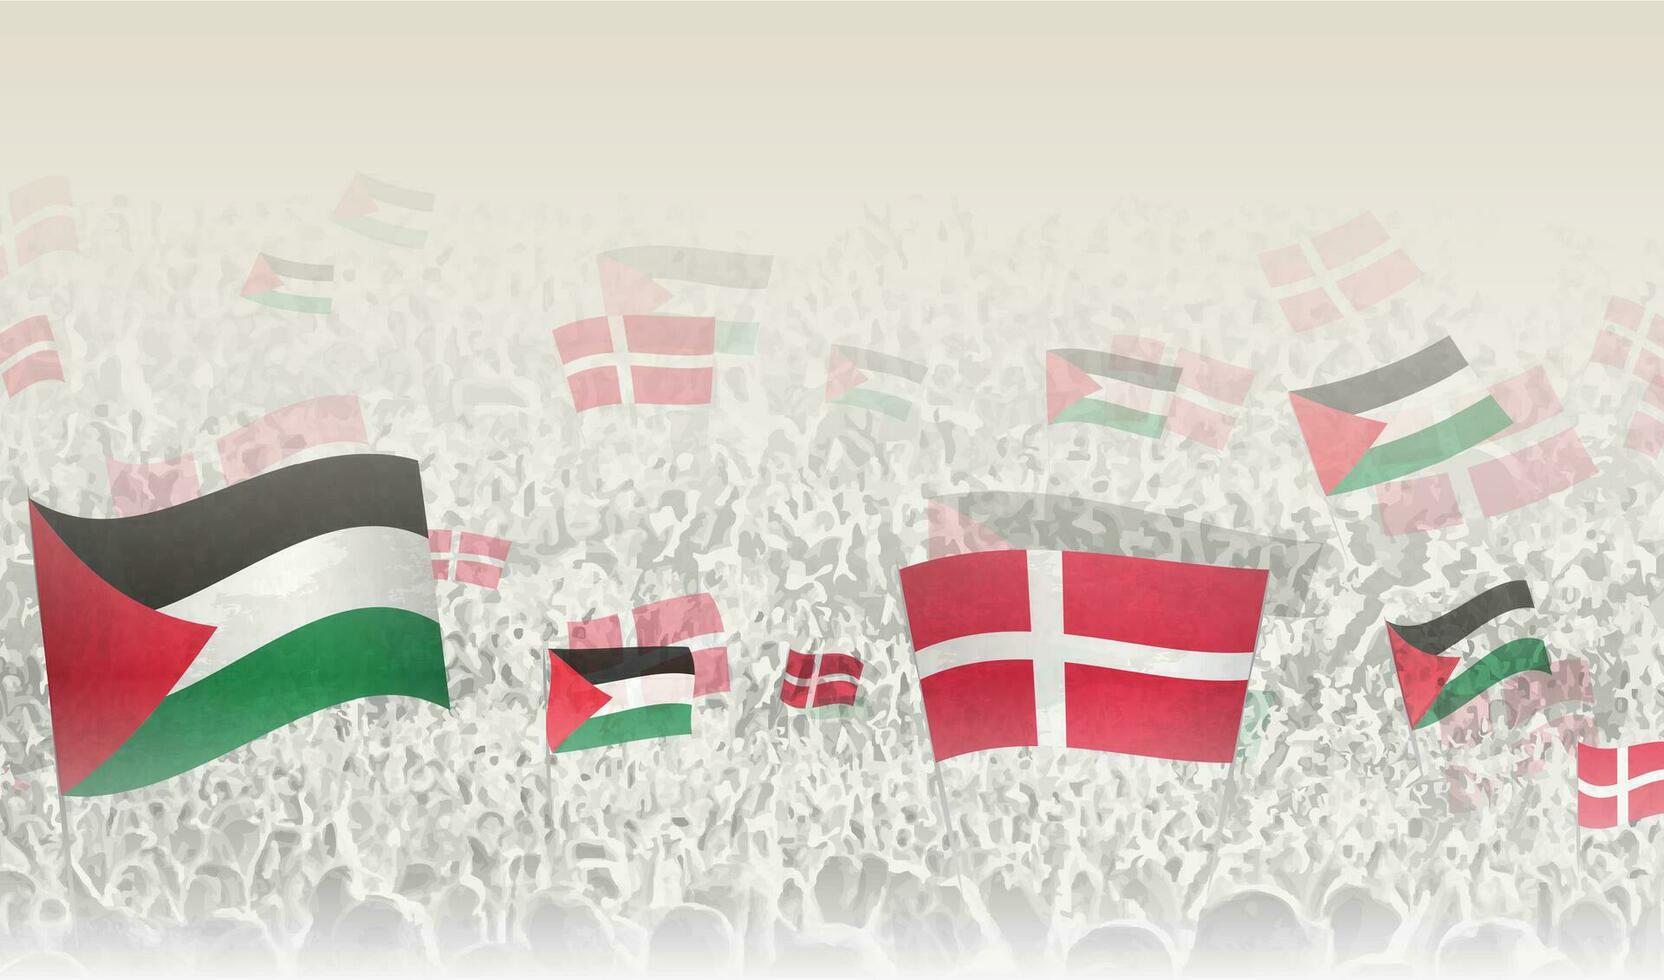 Palestine et Danemark drapeaux dans une foule de applaudissement personnes. vecteur